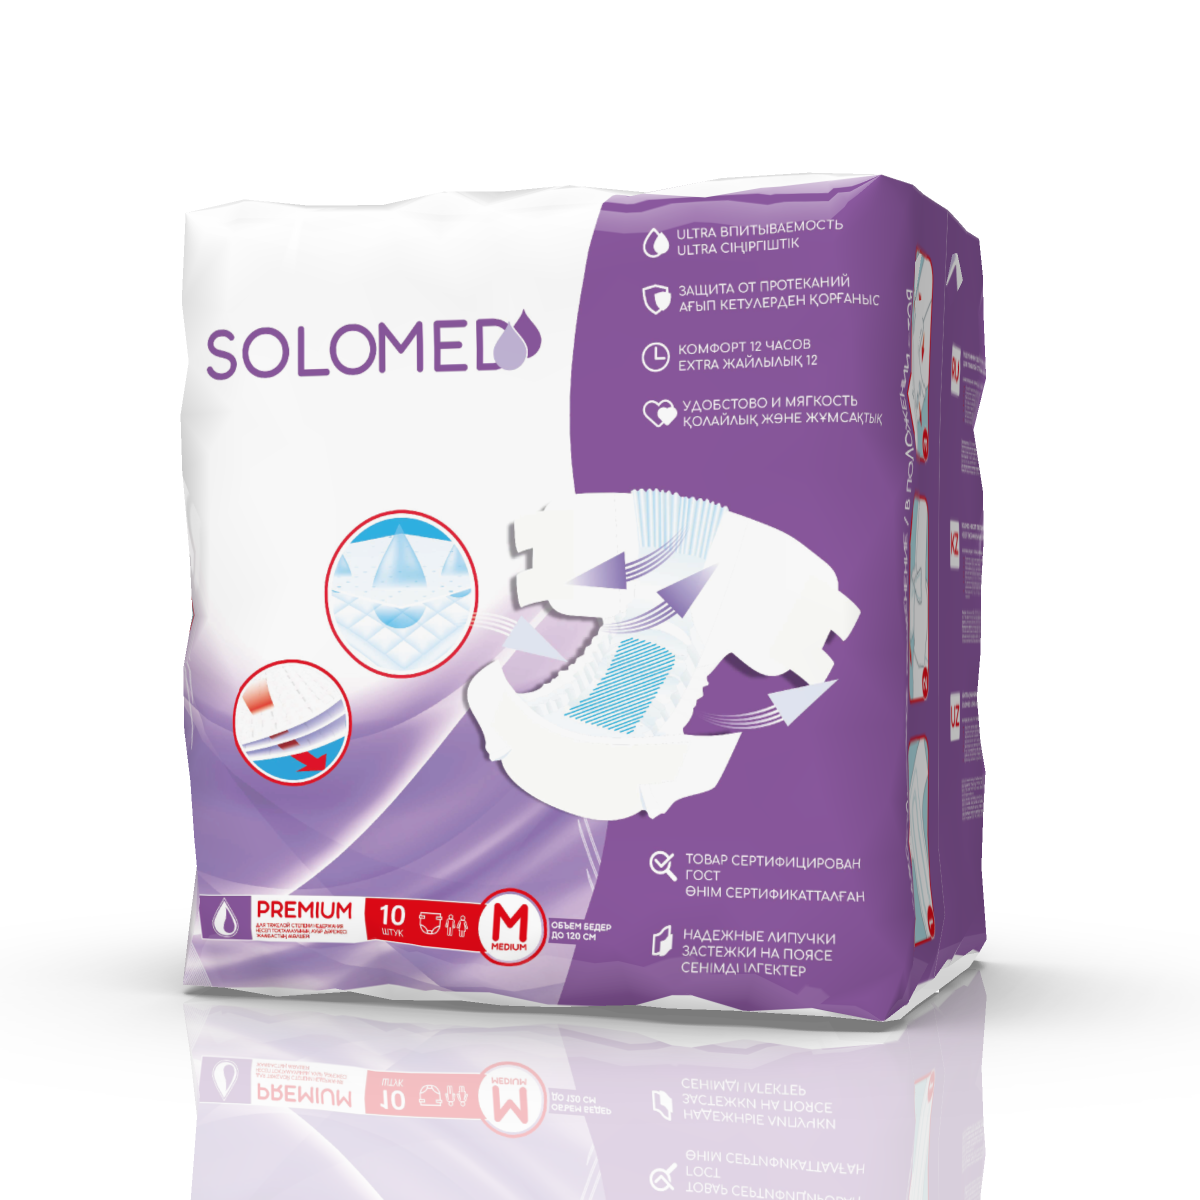 Solomed Premium, подгузники для взрослых (размер M), 10 шт. ребенок говорит о взрослых